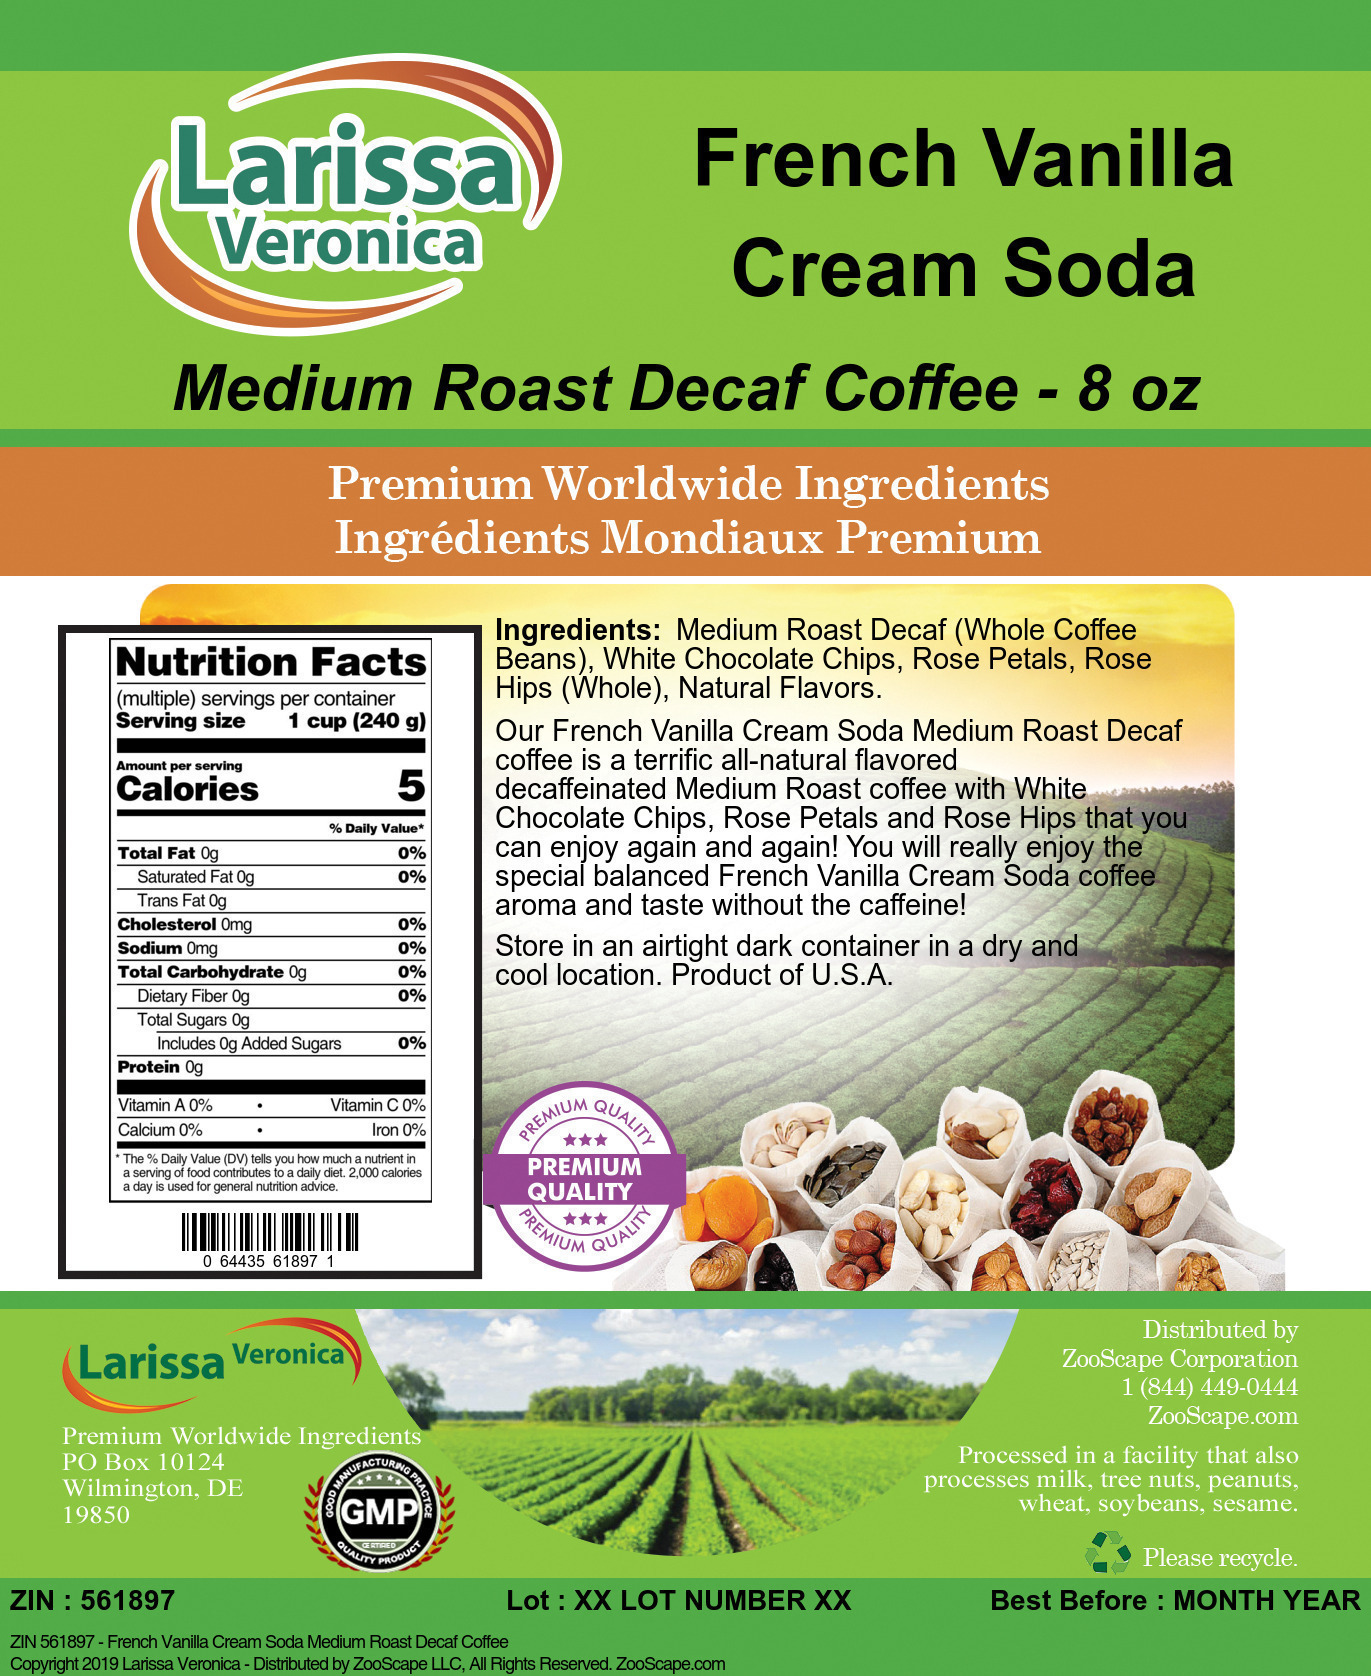 French Vanilla Cream Soda Medium Roast Decaf Coffee - Label